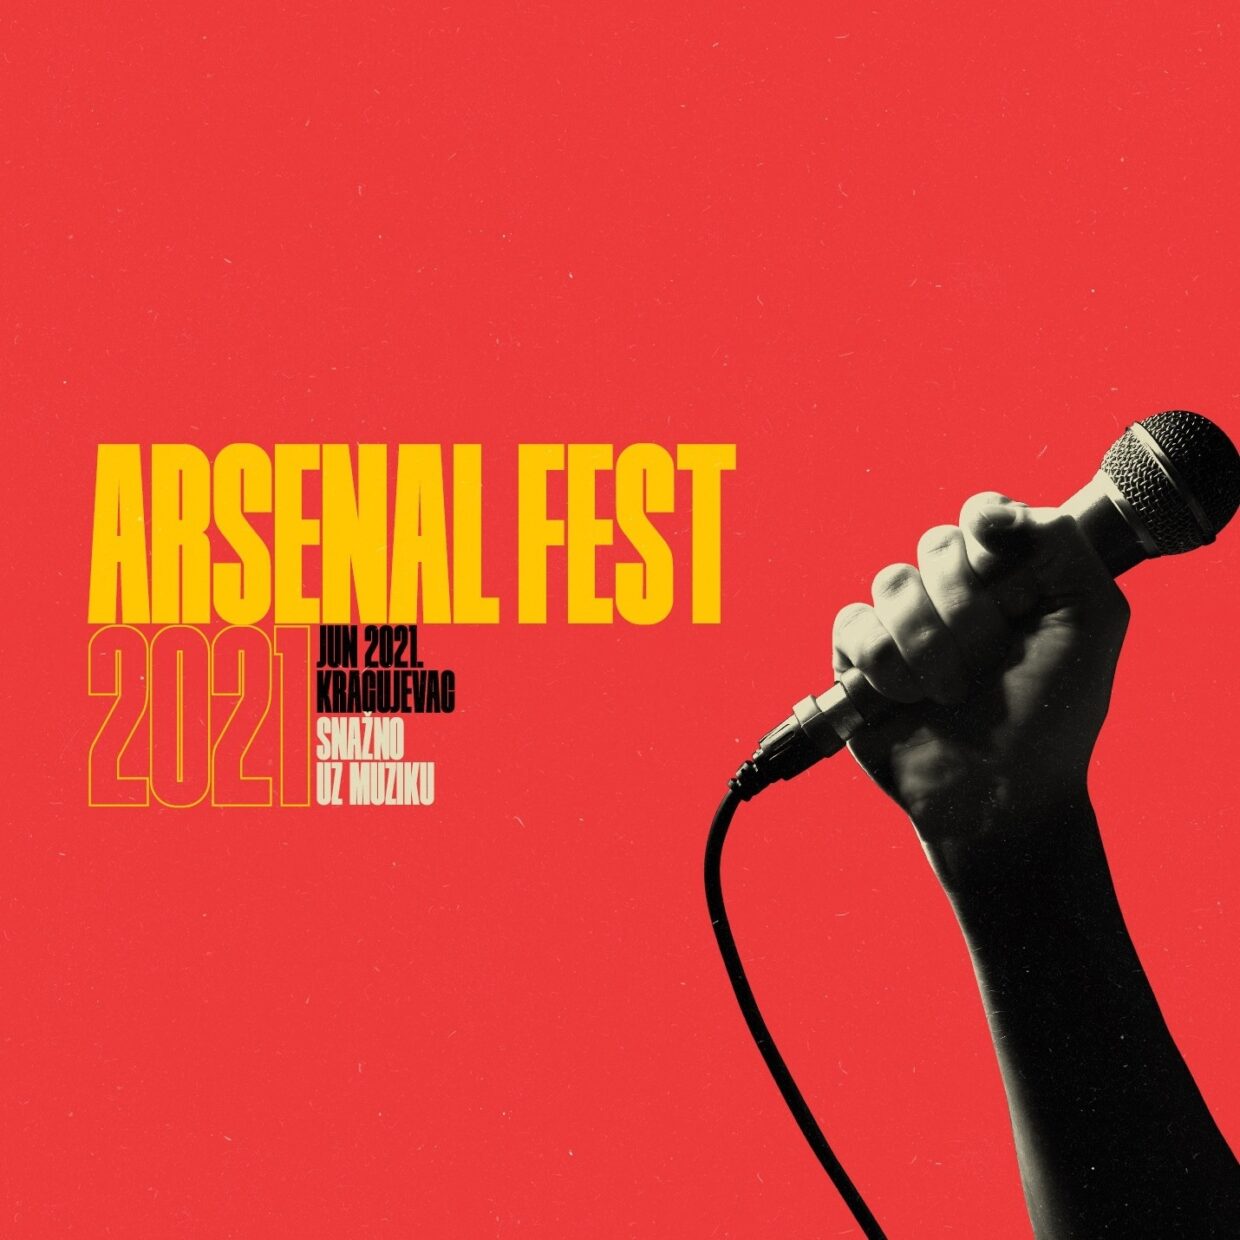 Arsenal Fest